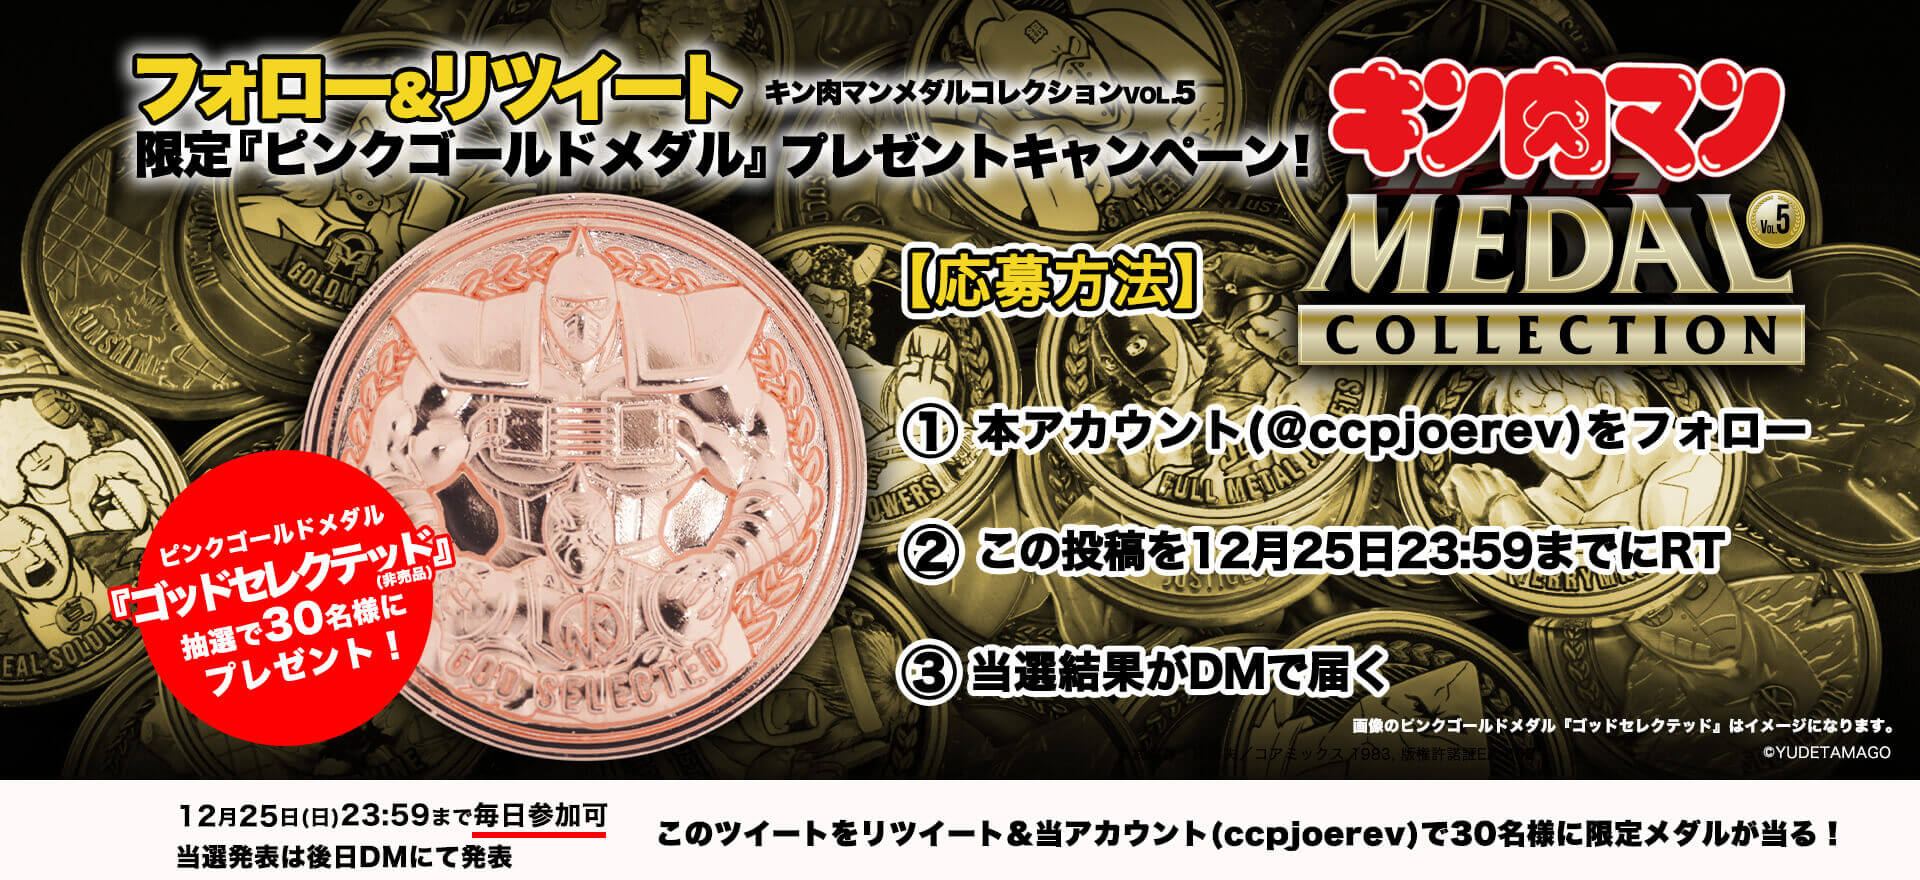 キン肉マンメダルコレクション VOL.5 【BOX】20個入 プラチナメダル